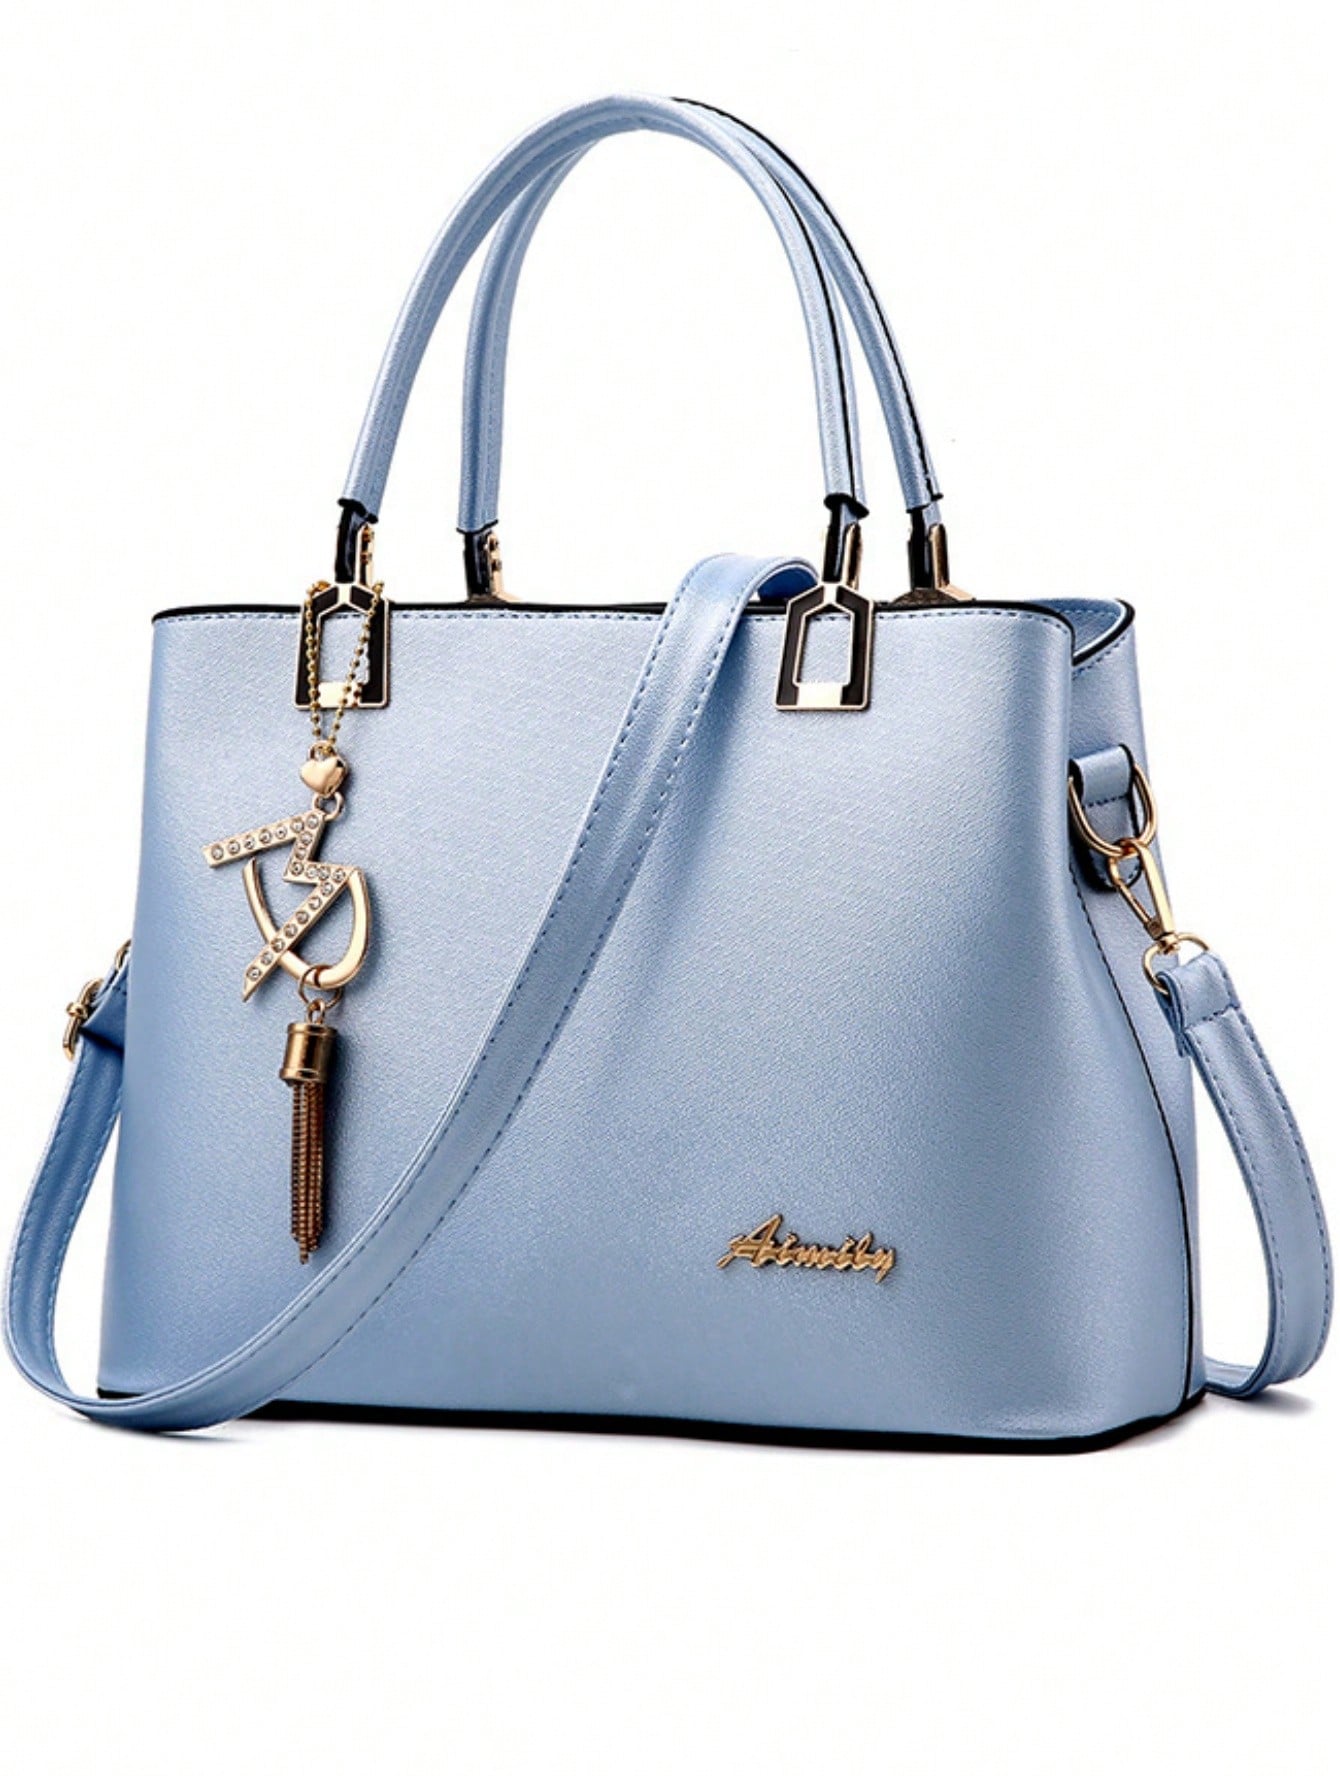 Модная женская сумка нового стиля, синий